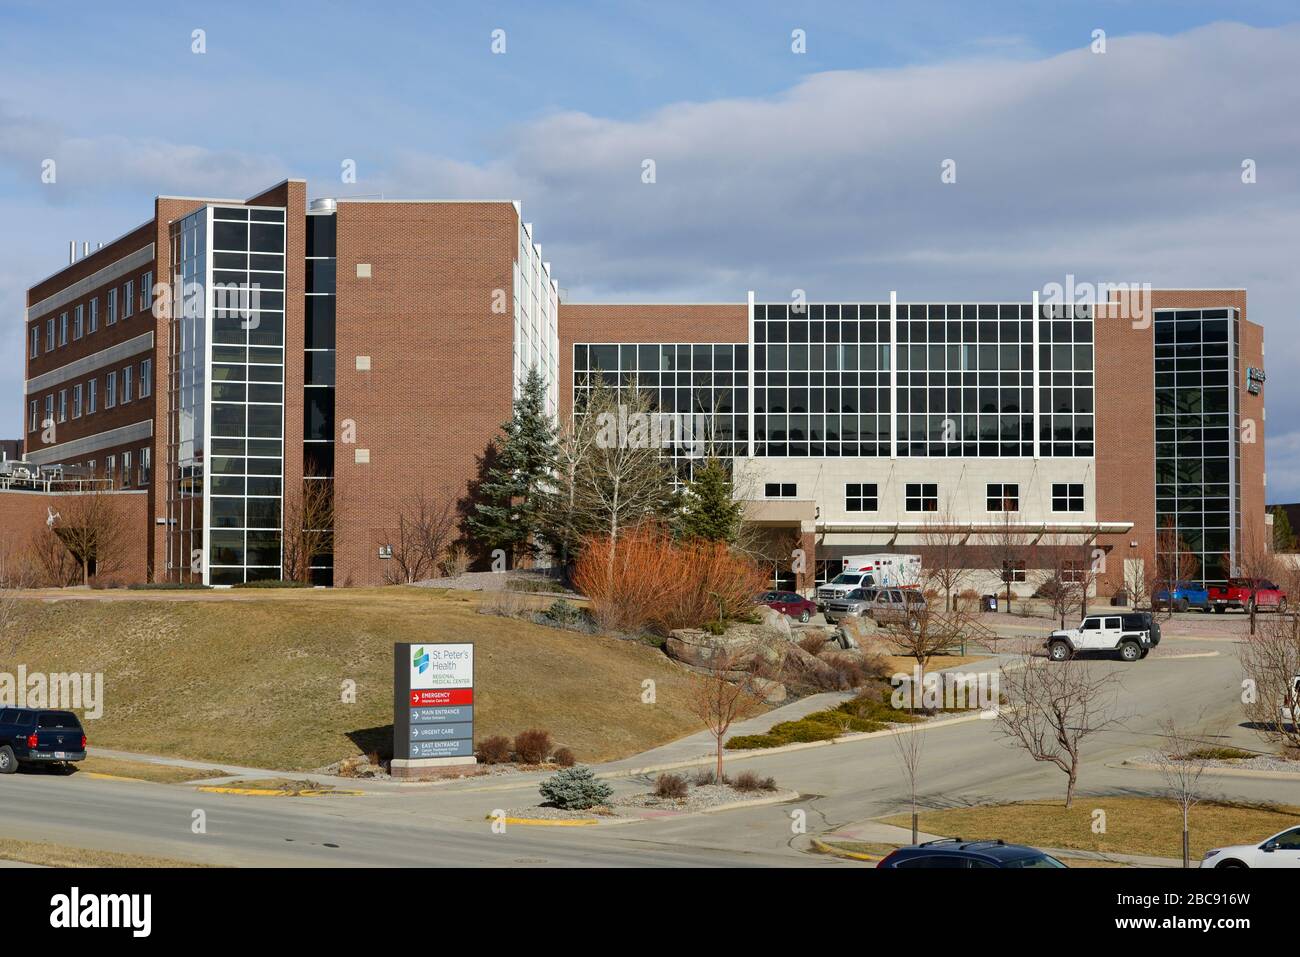 Helena, Montana / US - 23. März 2020: Das Äußere der St. Peter's Hospital Health Care Facility. Ein medizinisches Gebäude in der Stadt Helena. Stockfoto